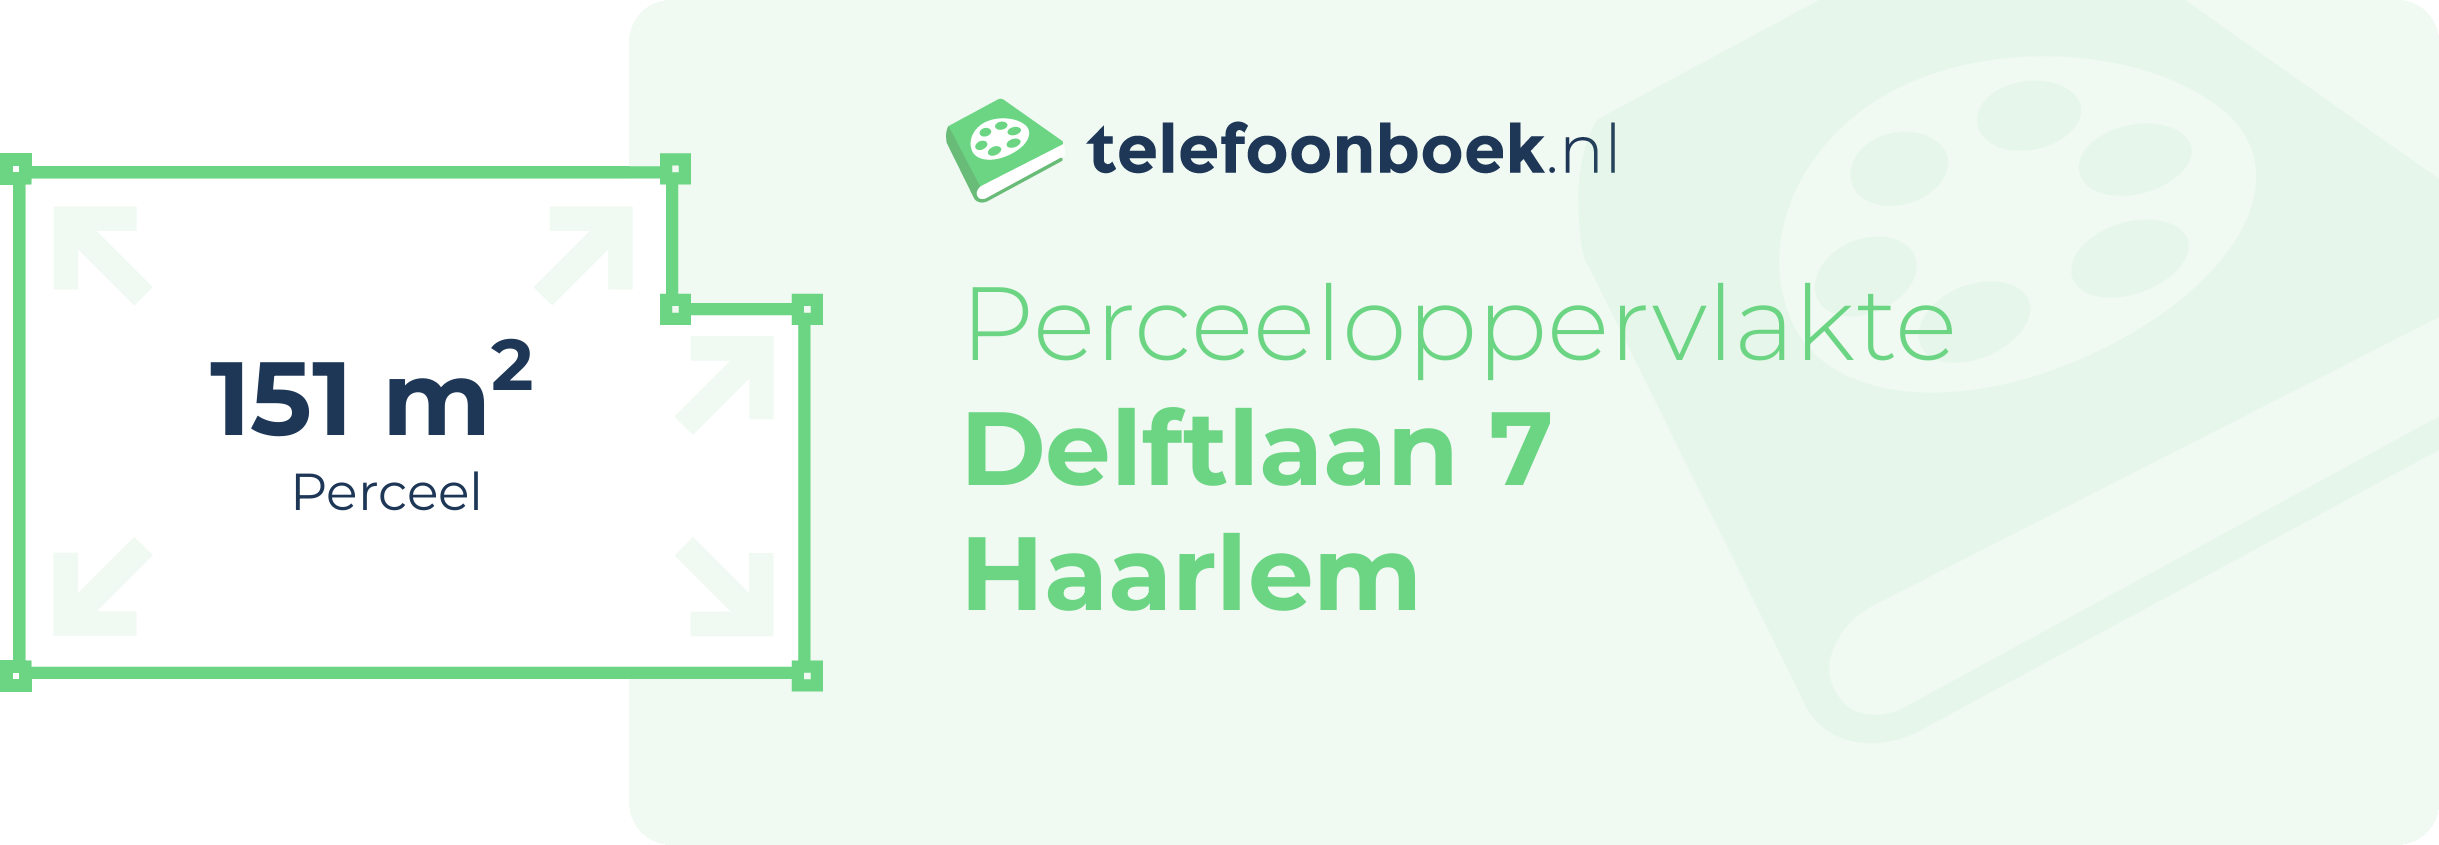 Perceeloppervlakte Delftlaan 7 Haarlem